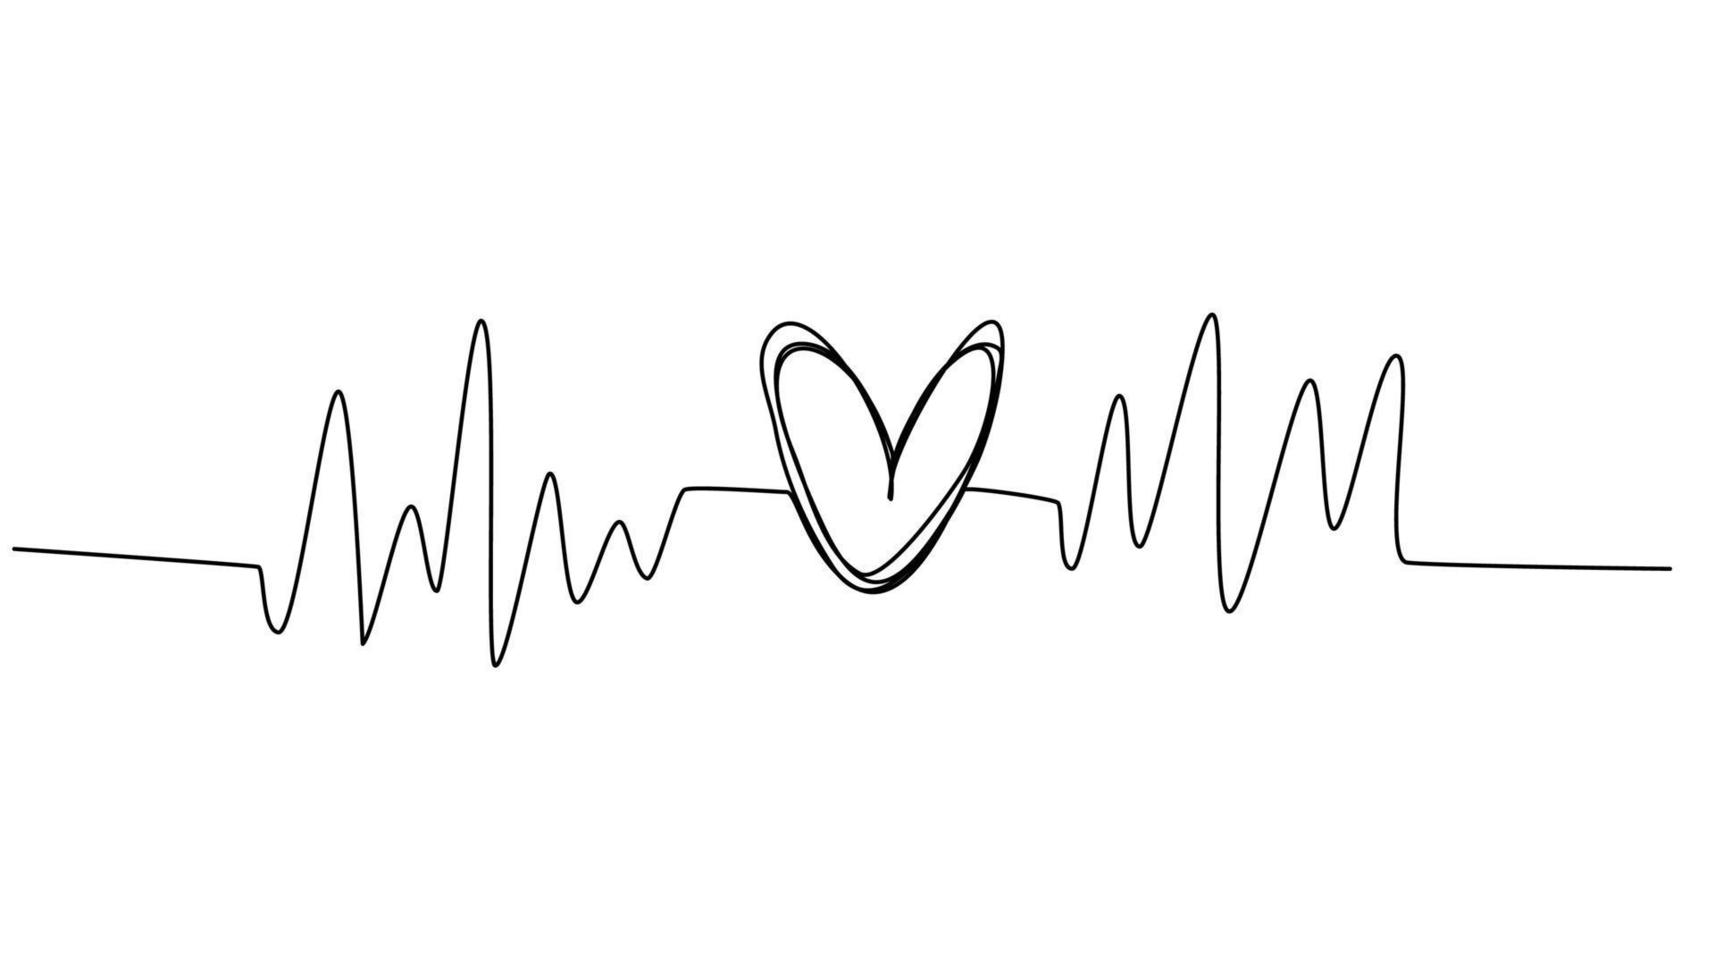 Herz mit Puls. Herzschlag. schallwelle romantisches symbol im einfachen linearen stil. eine fortlaufende Strichzeichnung. hand gezeichnete vektorillustrationen lokalisiert auf dem weißen hintergrund. vektor